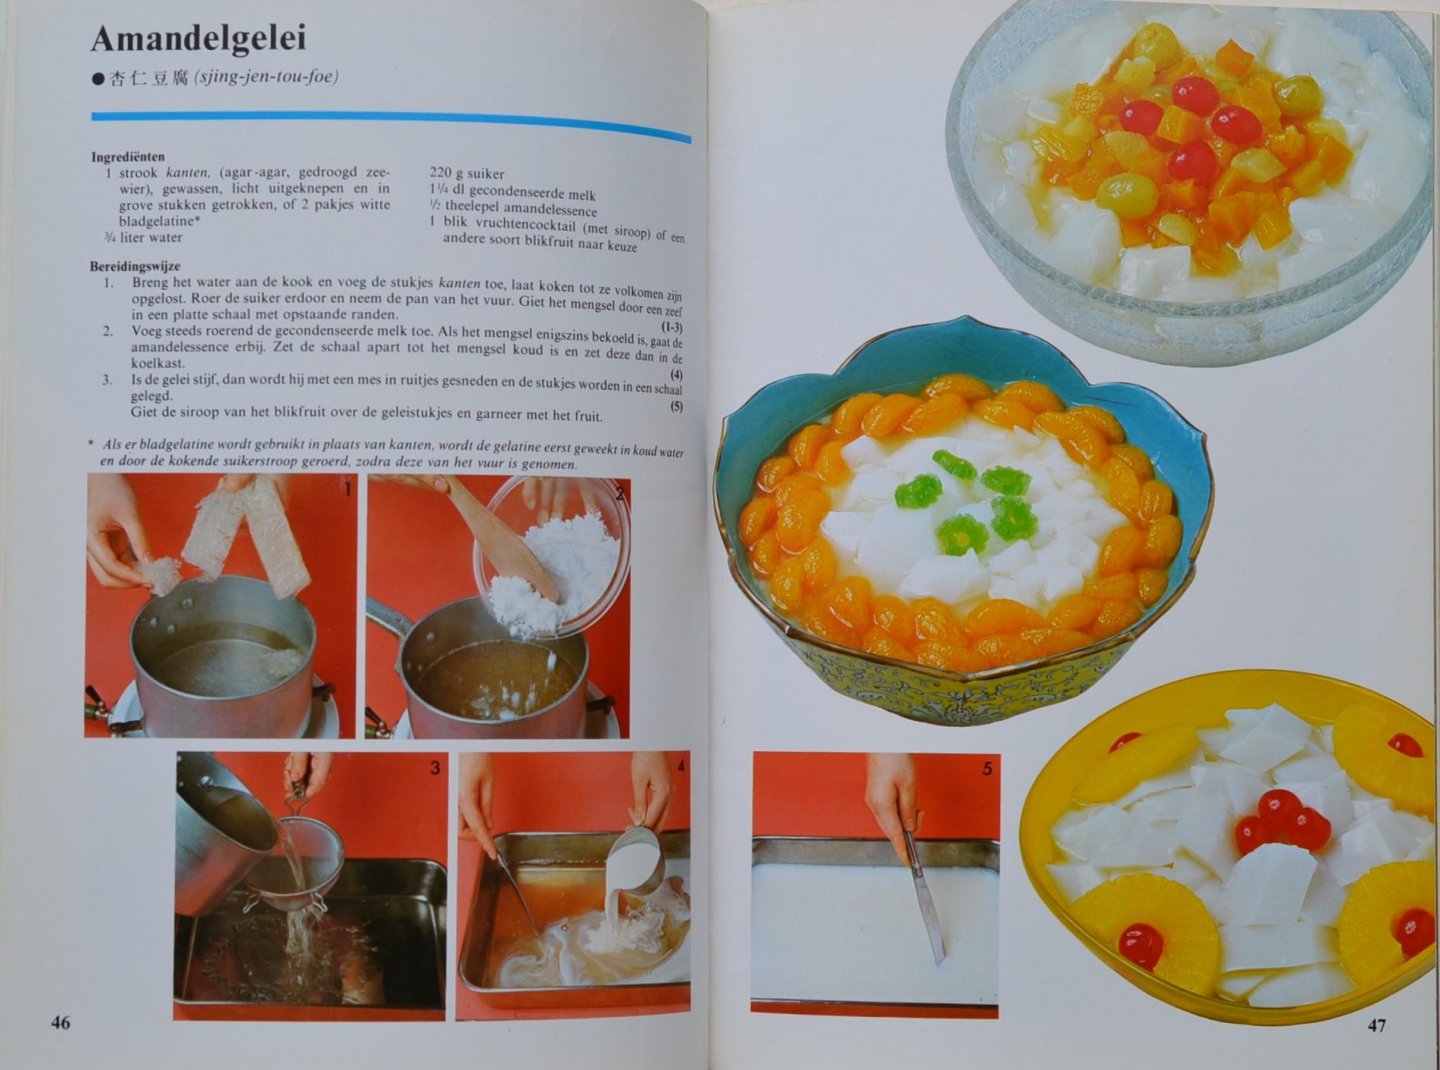 Hatano, Sumi - Chinees eten - Kijk kookboek